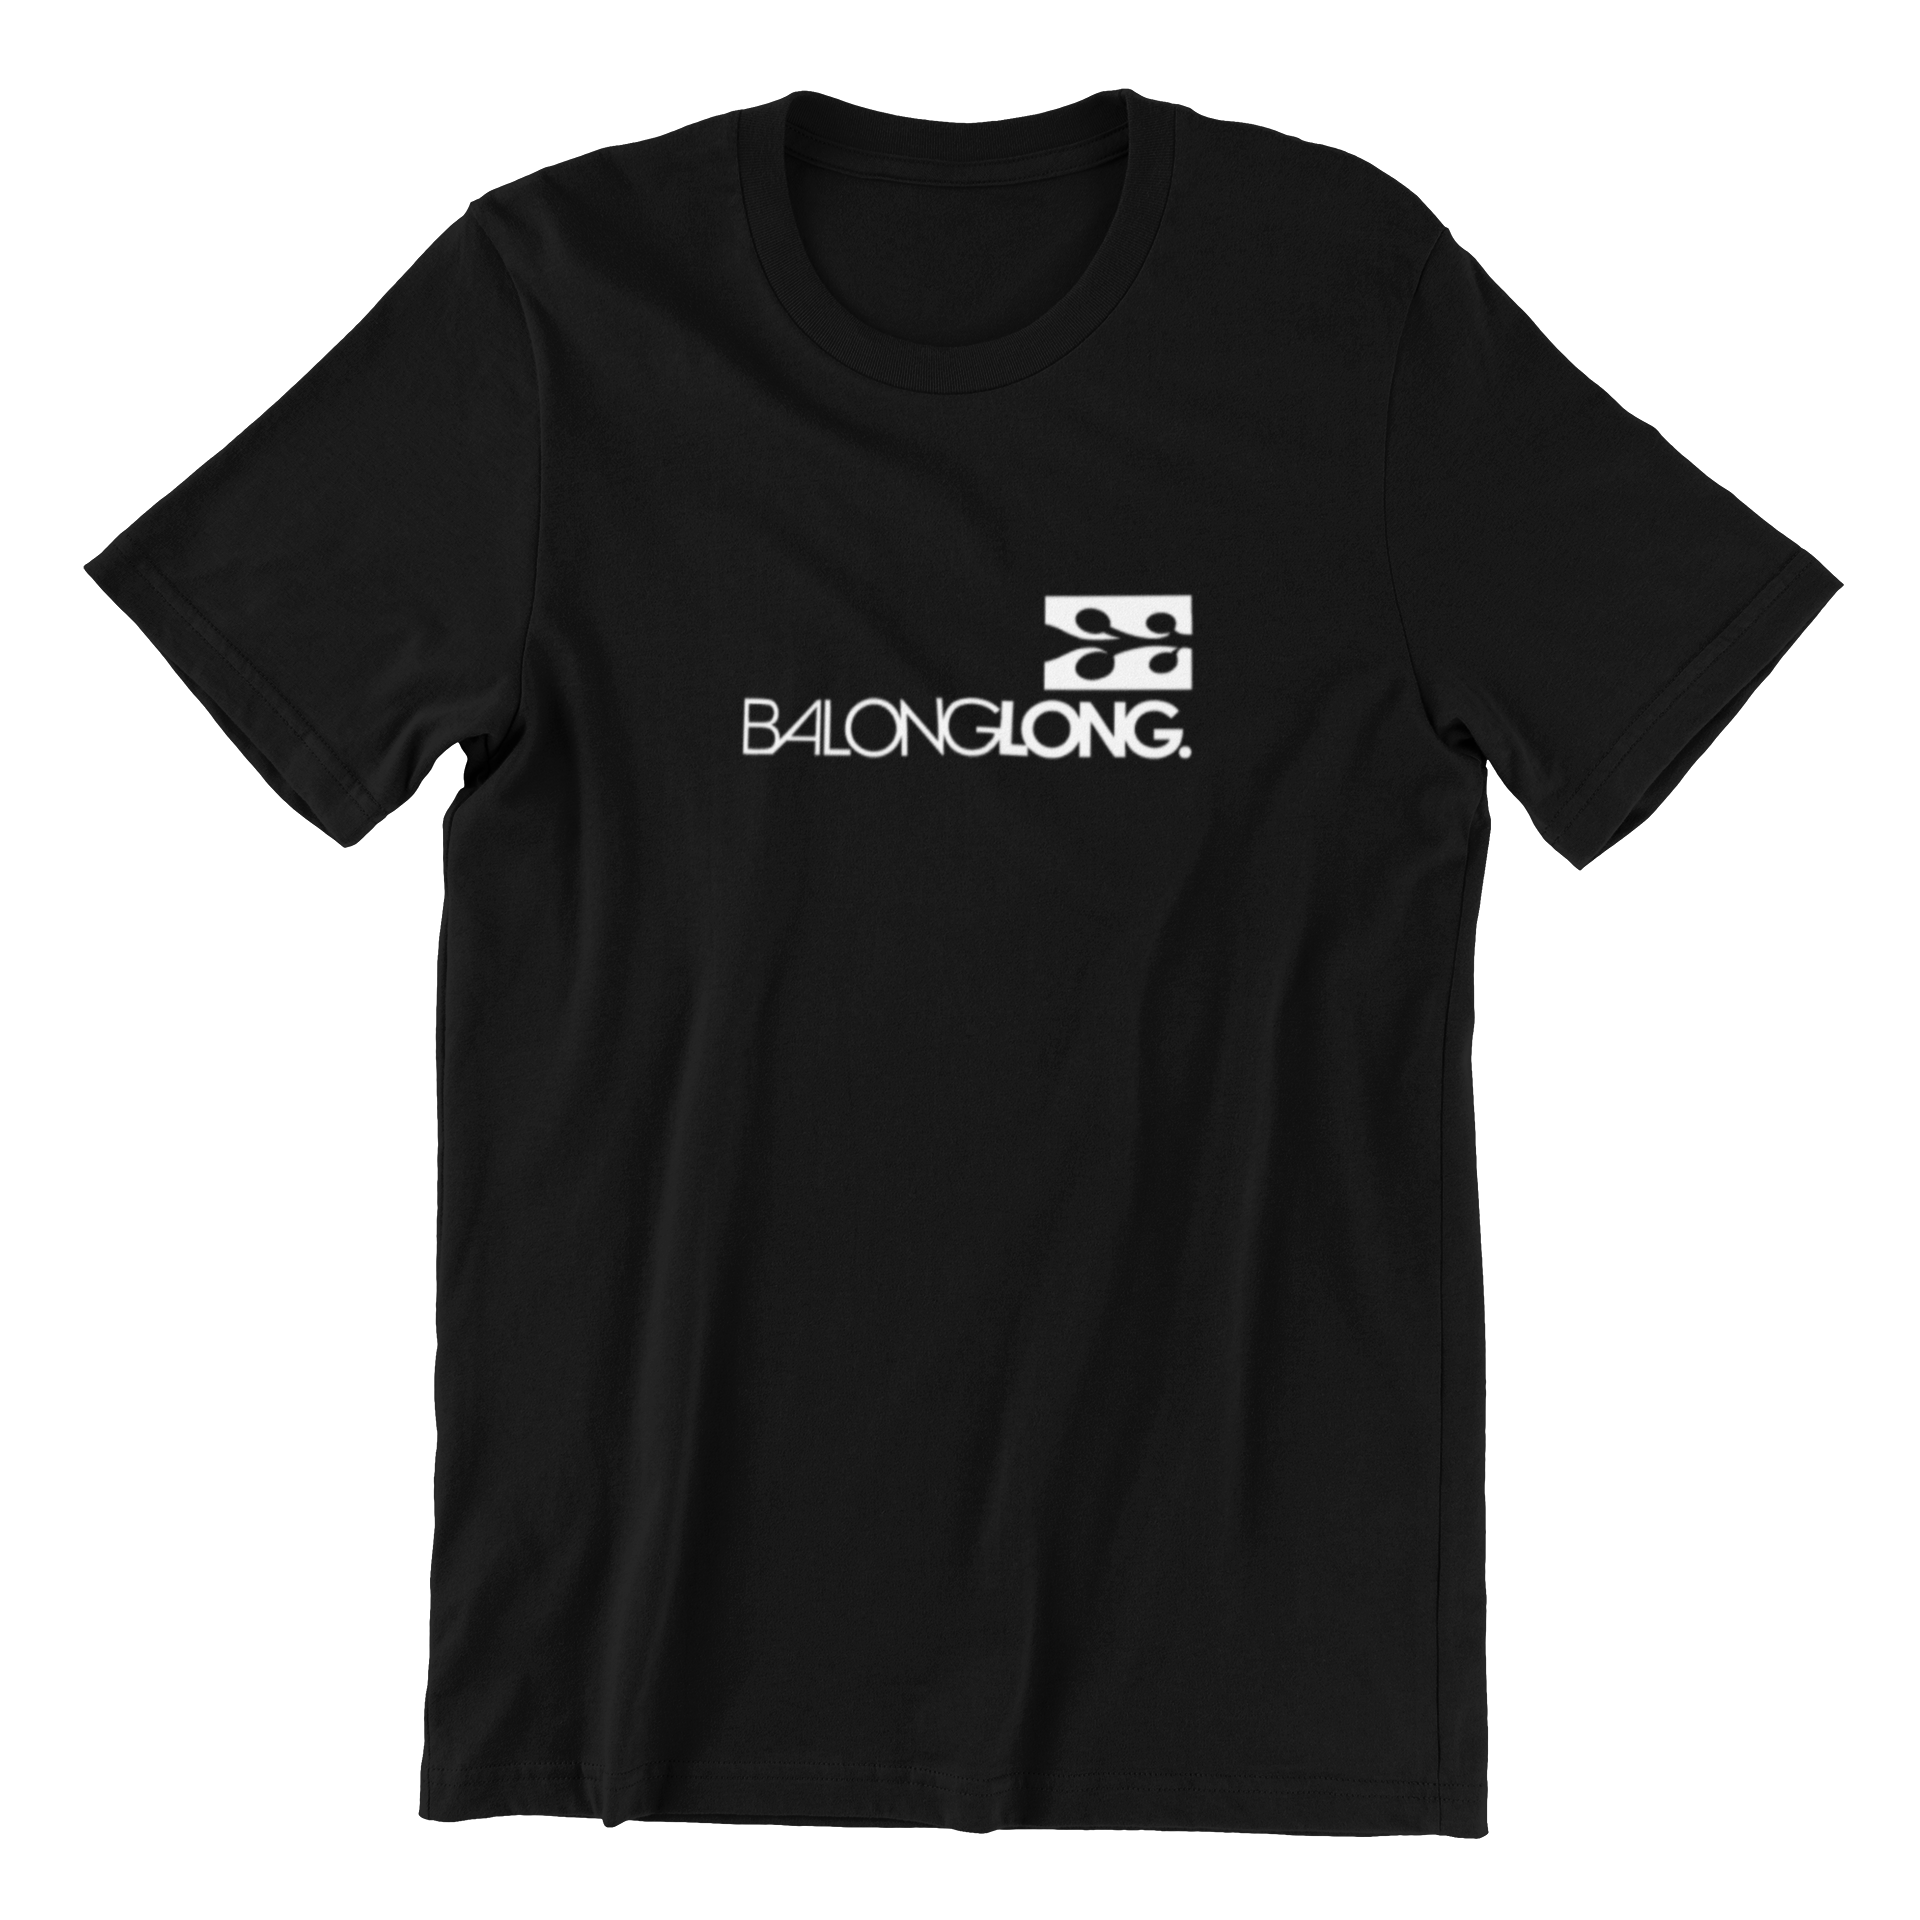 Balonglong Short Sleeve T-shirt